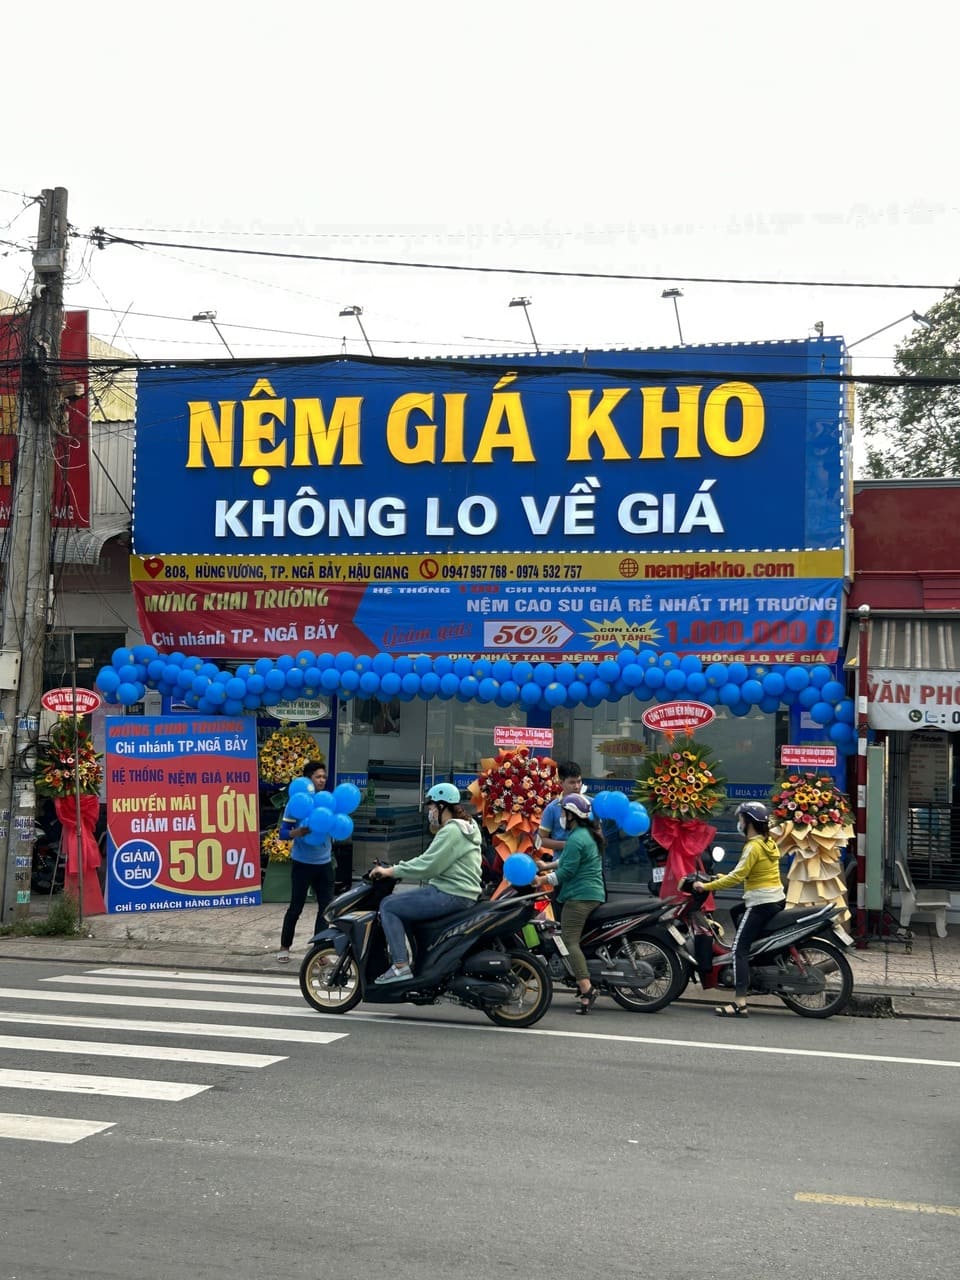 Khai trương cửa hàng nệm giá kho tại thành phố Ngã Bảy Hậu Giang